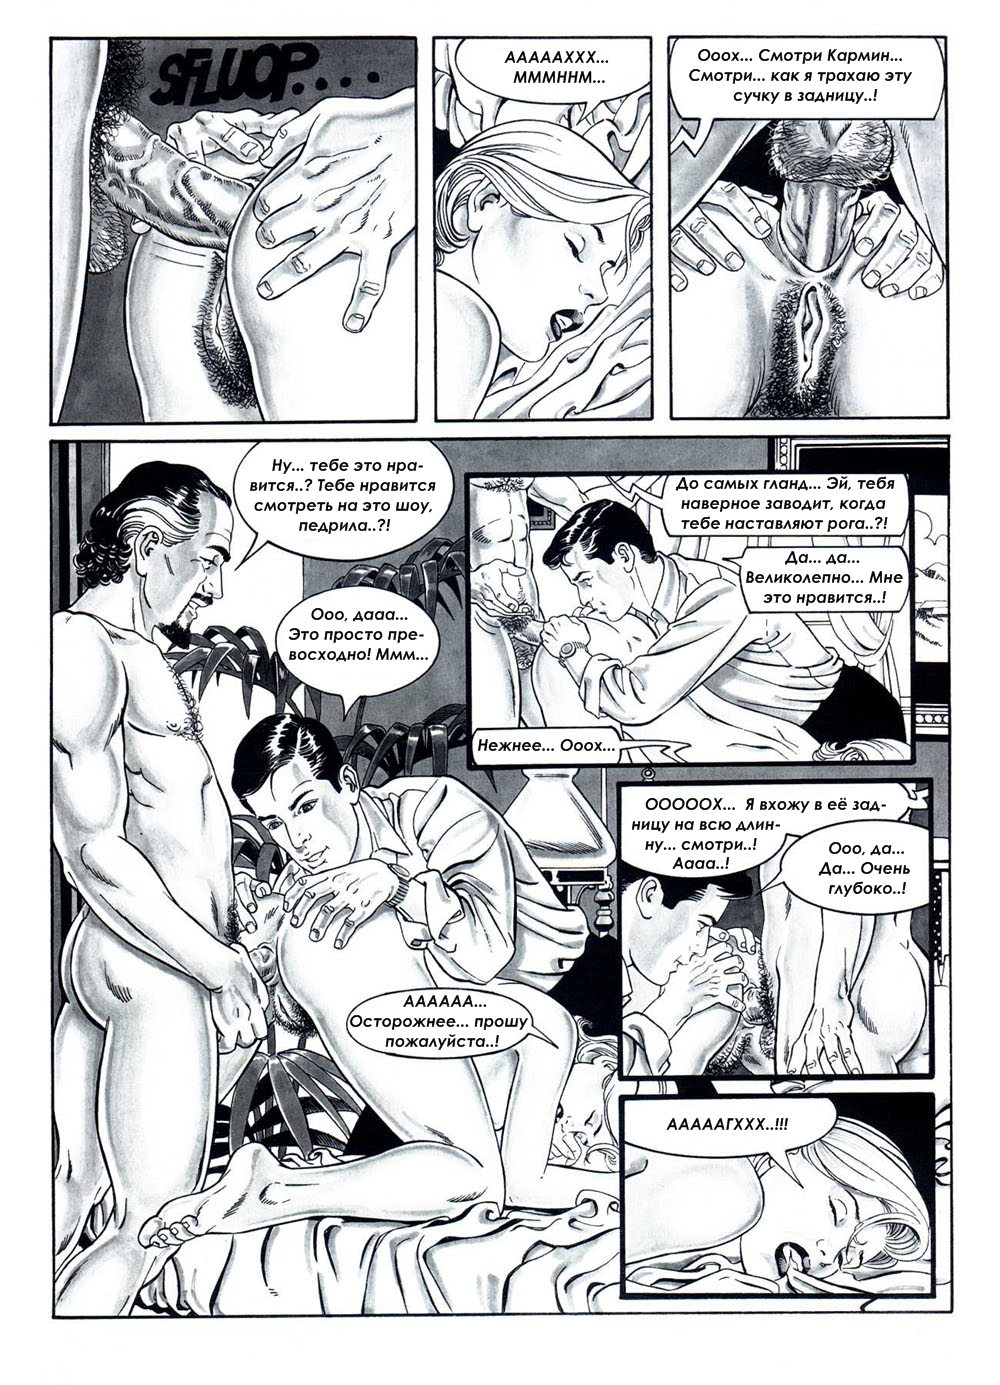 Порно комиксы медовый месяц фото 6